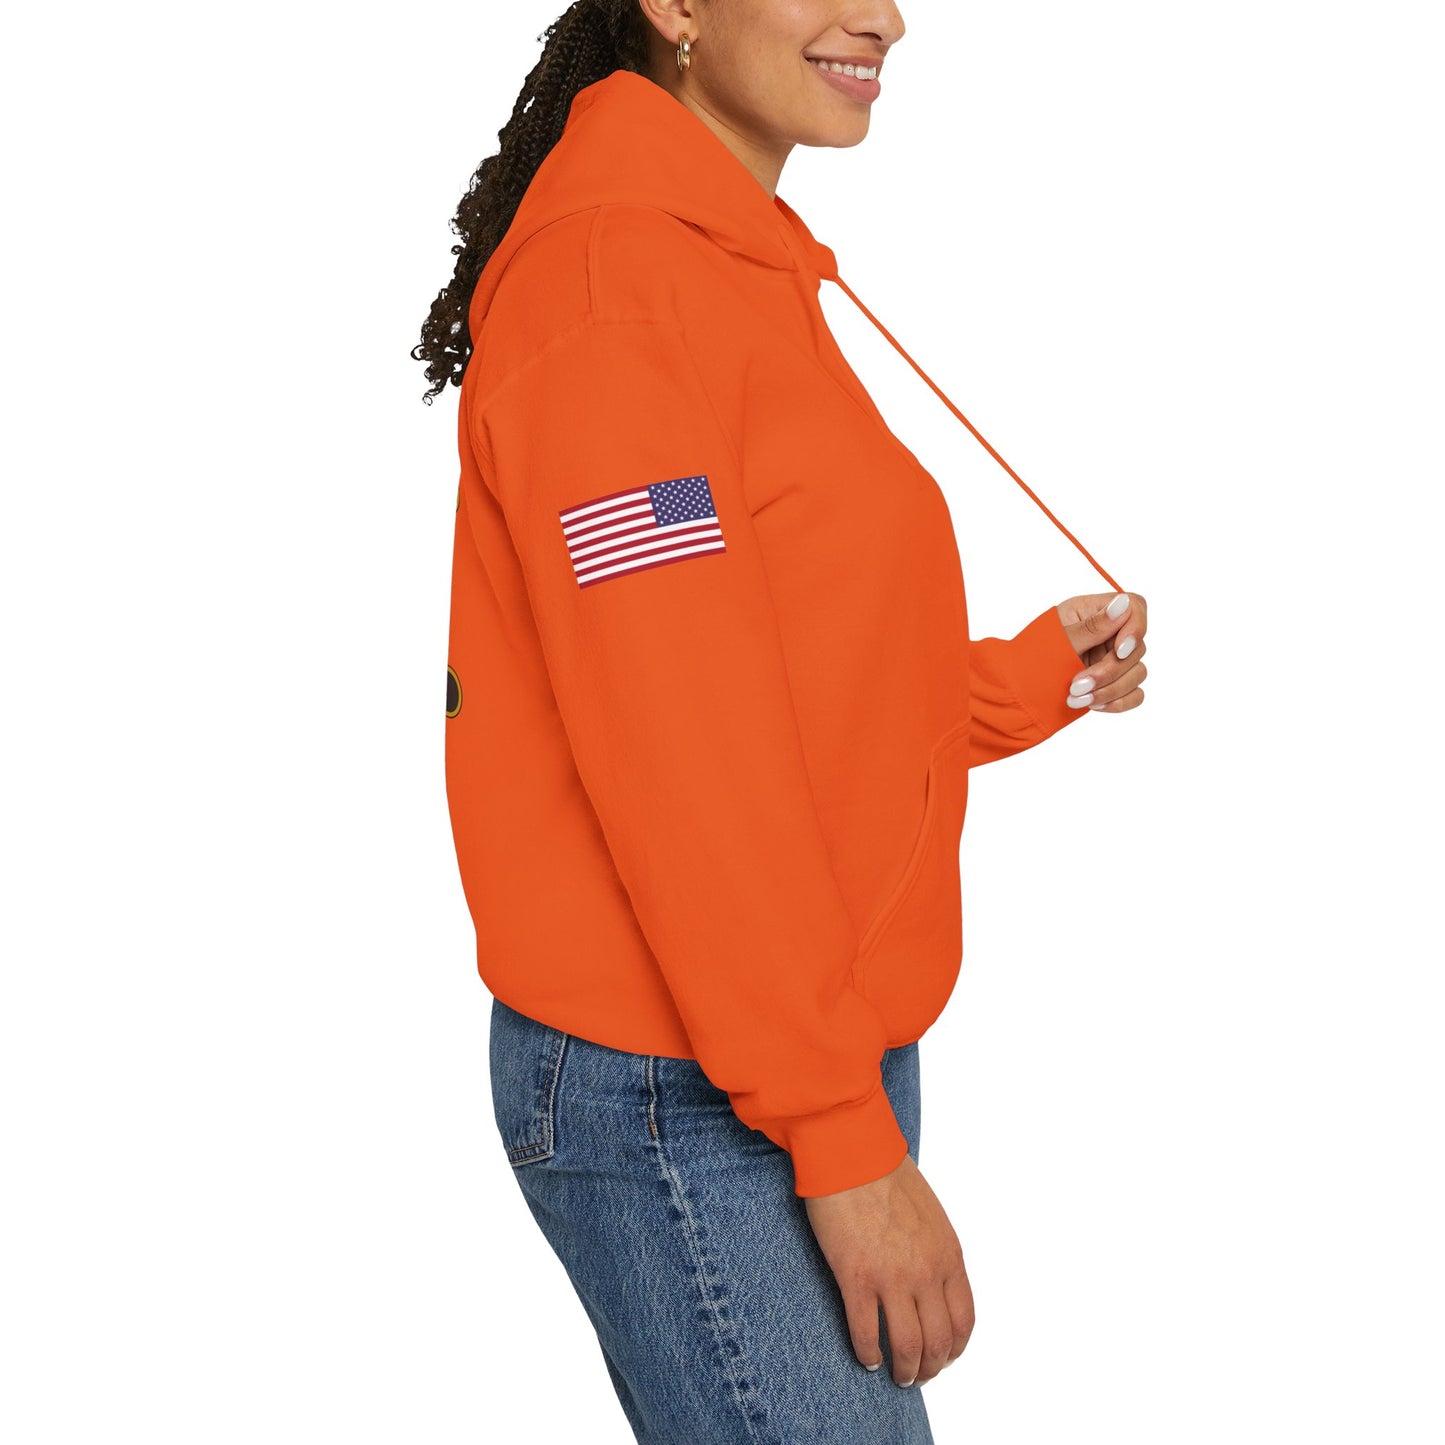 Desperados - Flags on Sleeves - Unisex Heavy Blend™ Hooded Sweatshirt